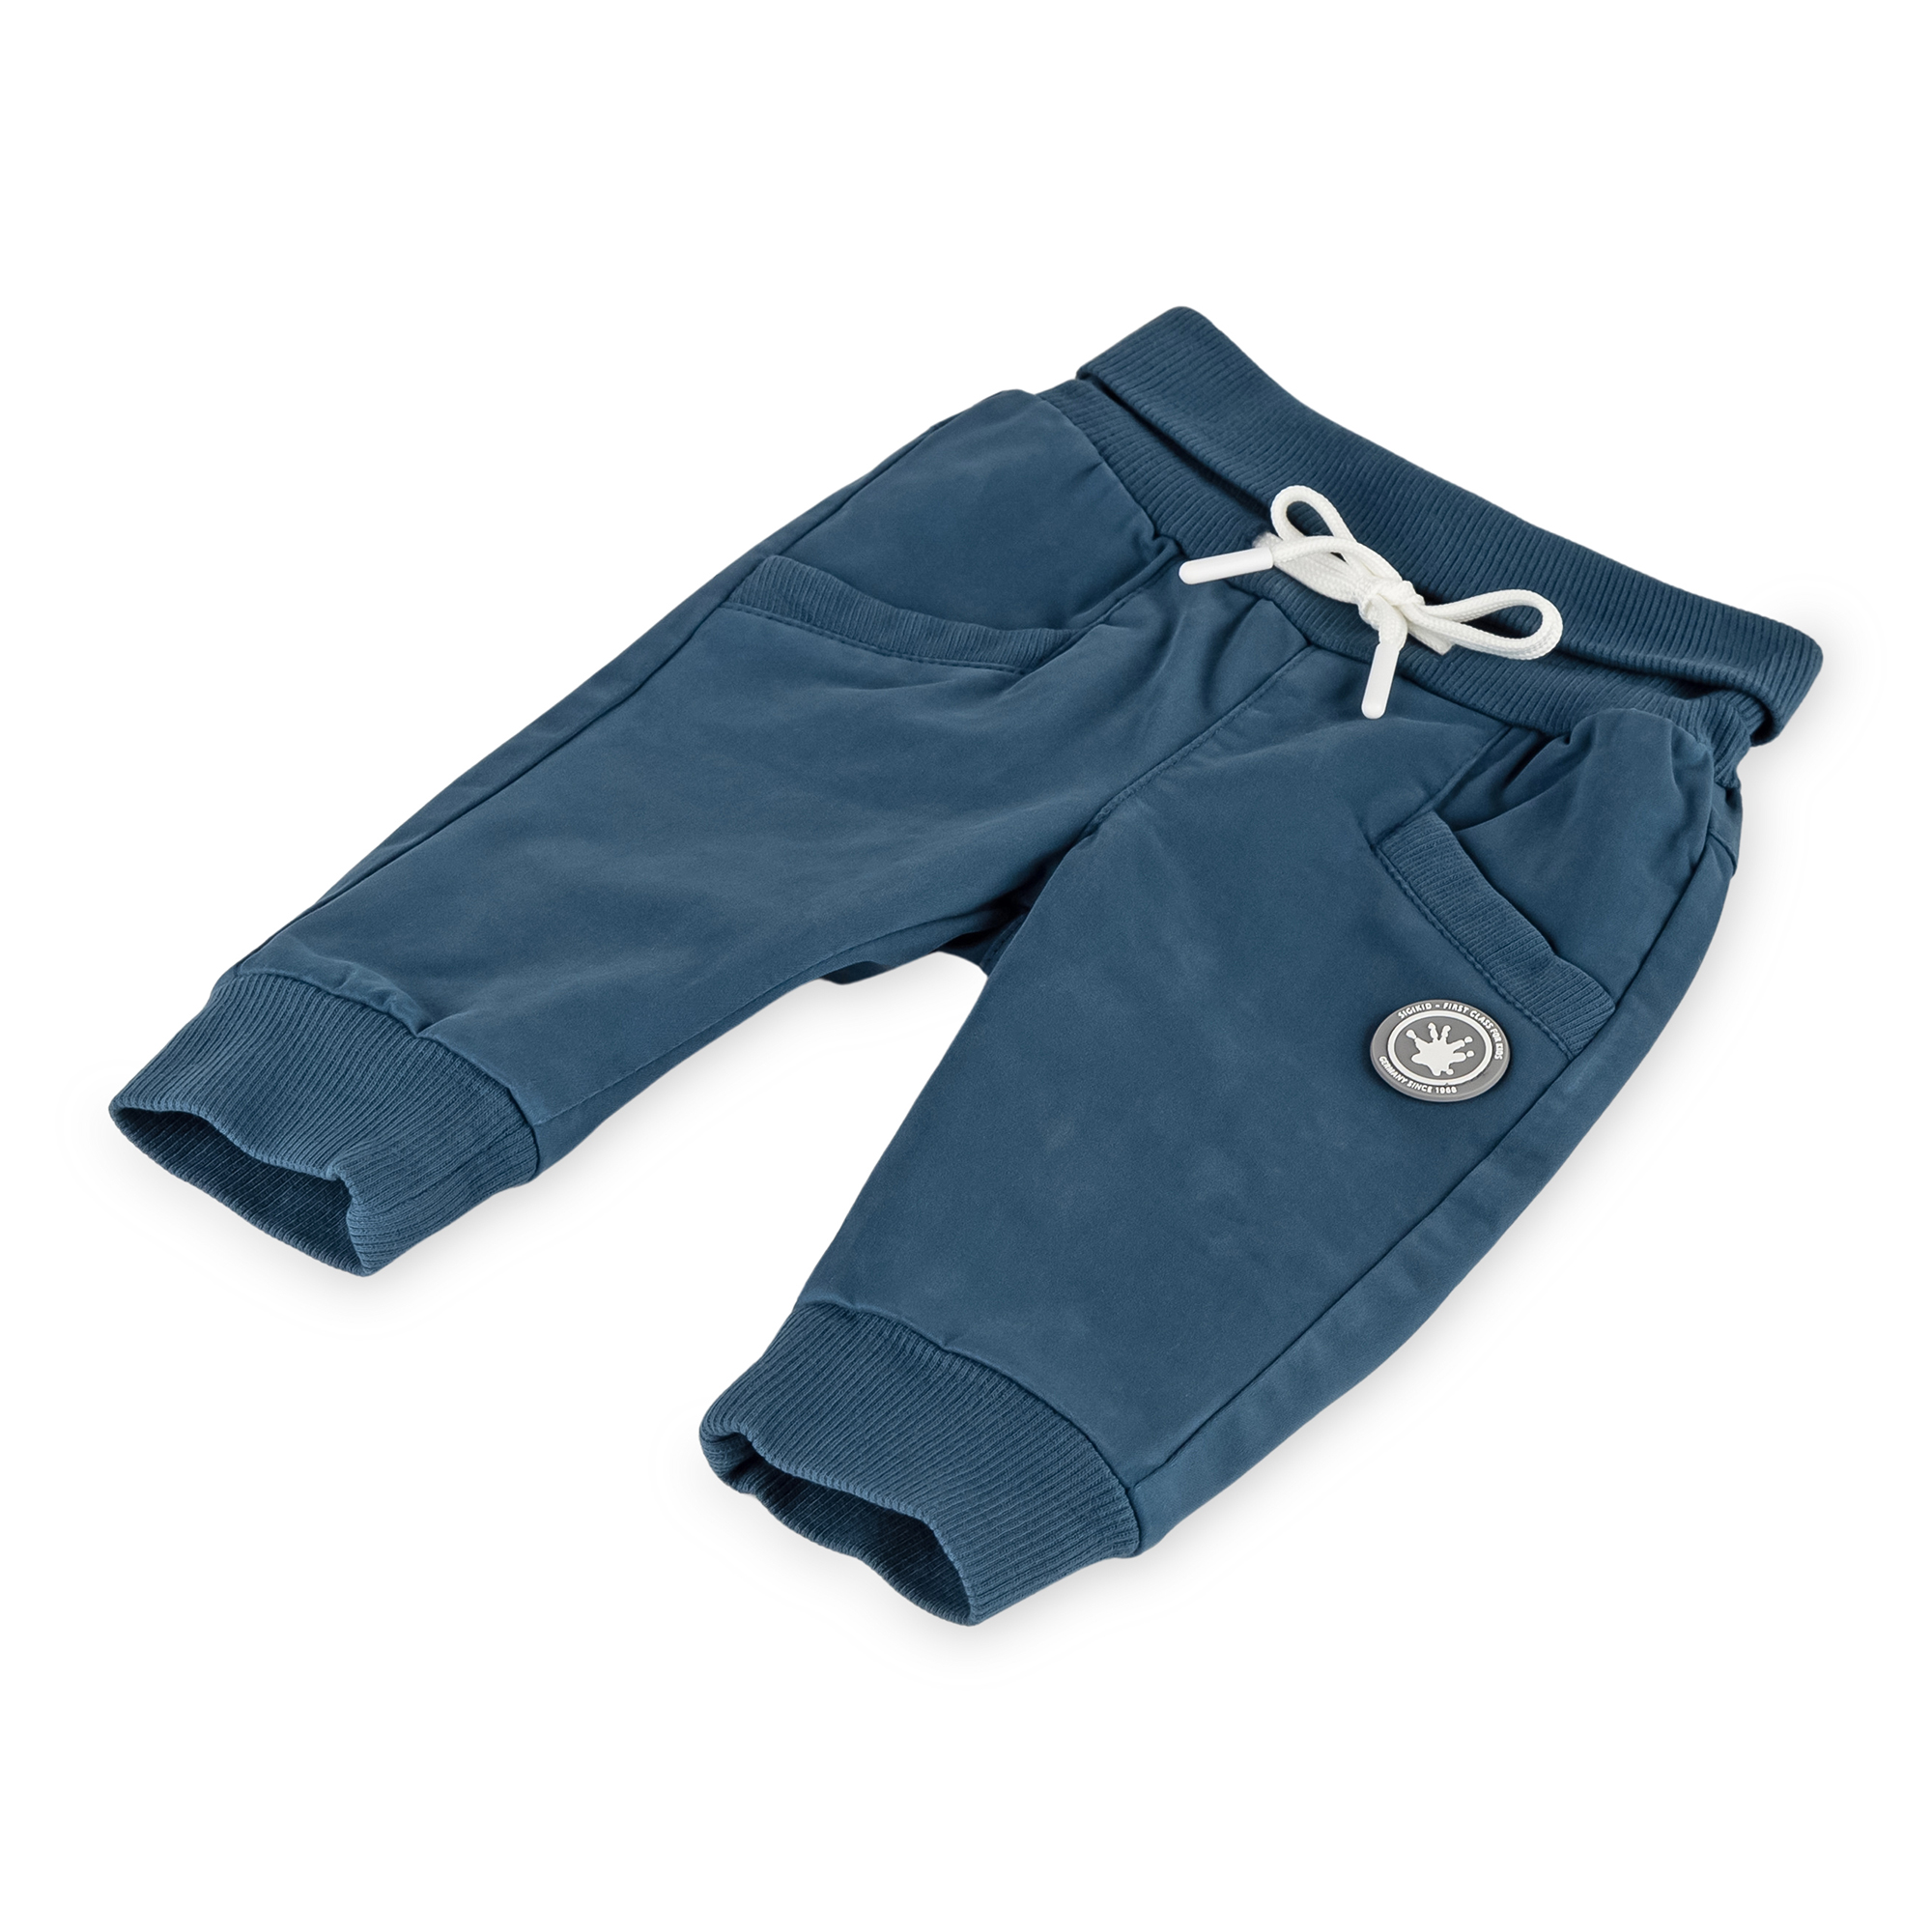 Baby rib knit waist gabardine pants, dark teal blue